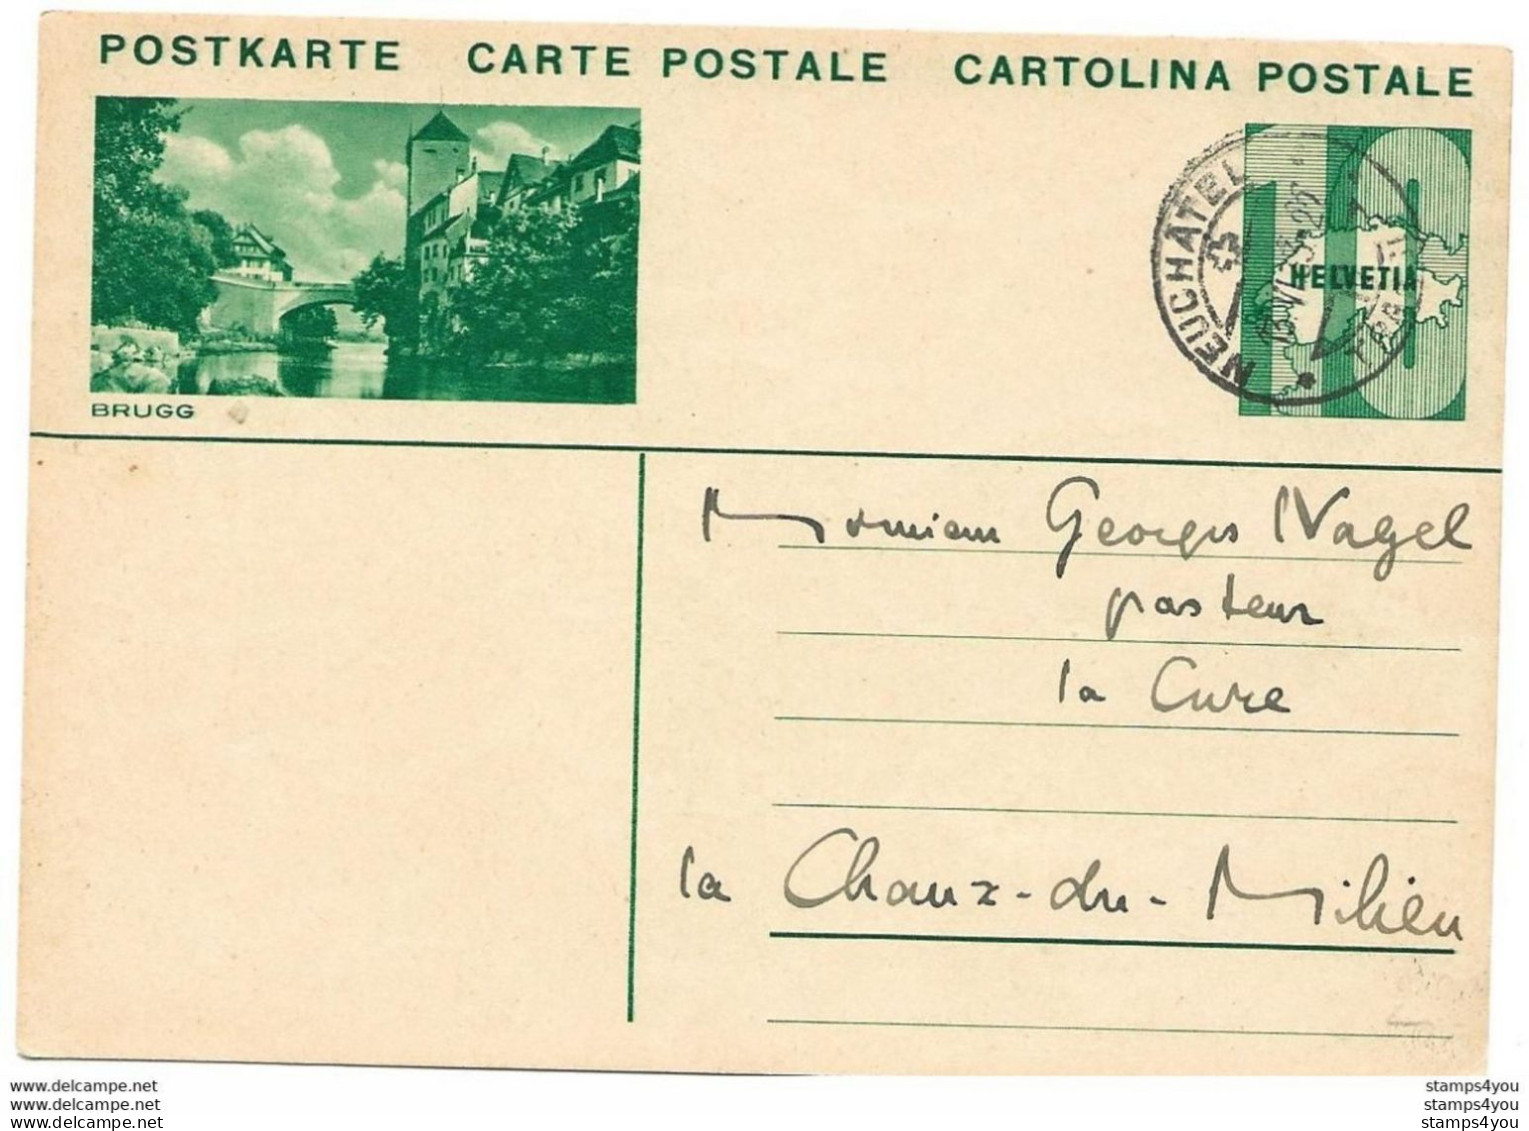 3 - 39 - Entier Postal Avec Illustration "Brugg" Avec Cachet à Date Neuchâtel 1933 - Entiers Postaux